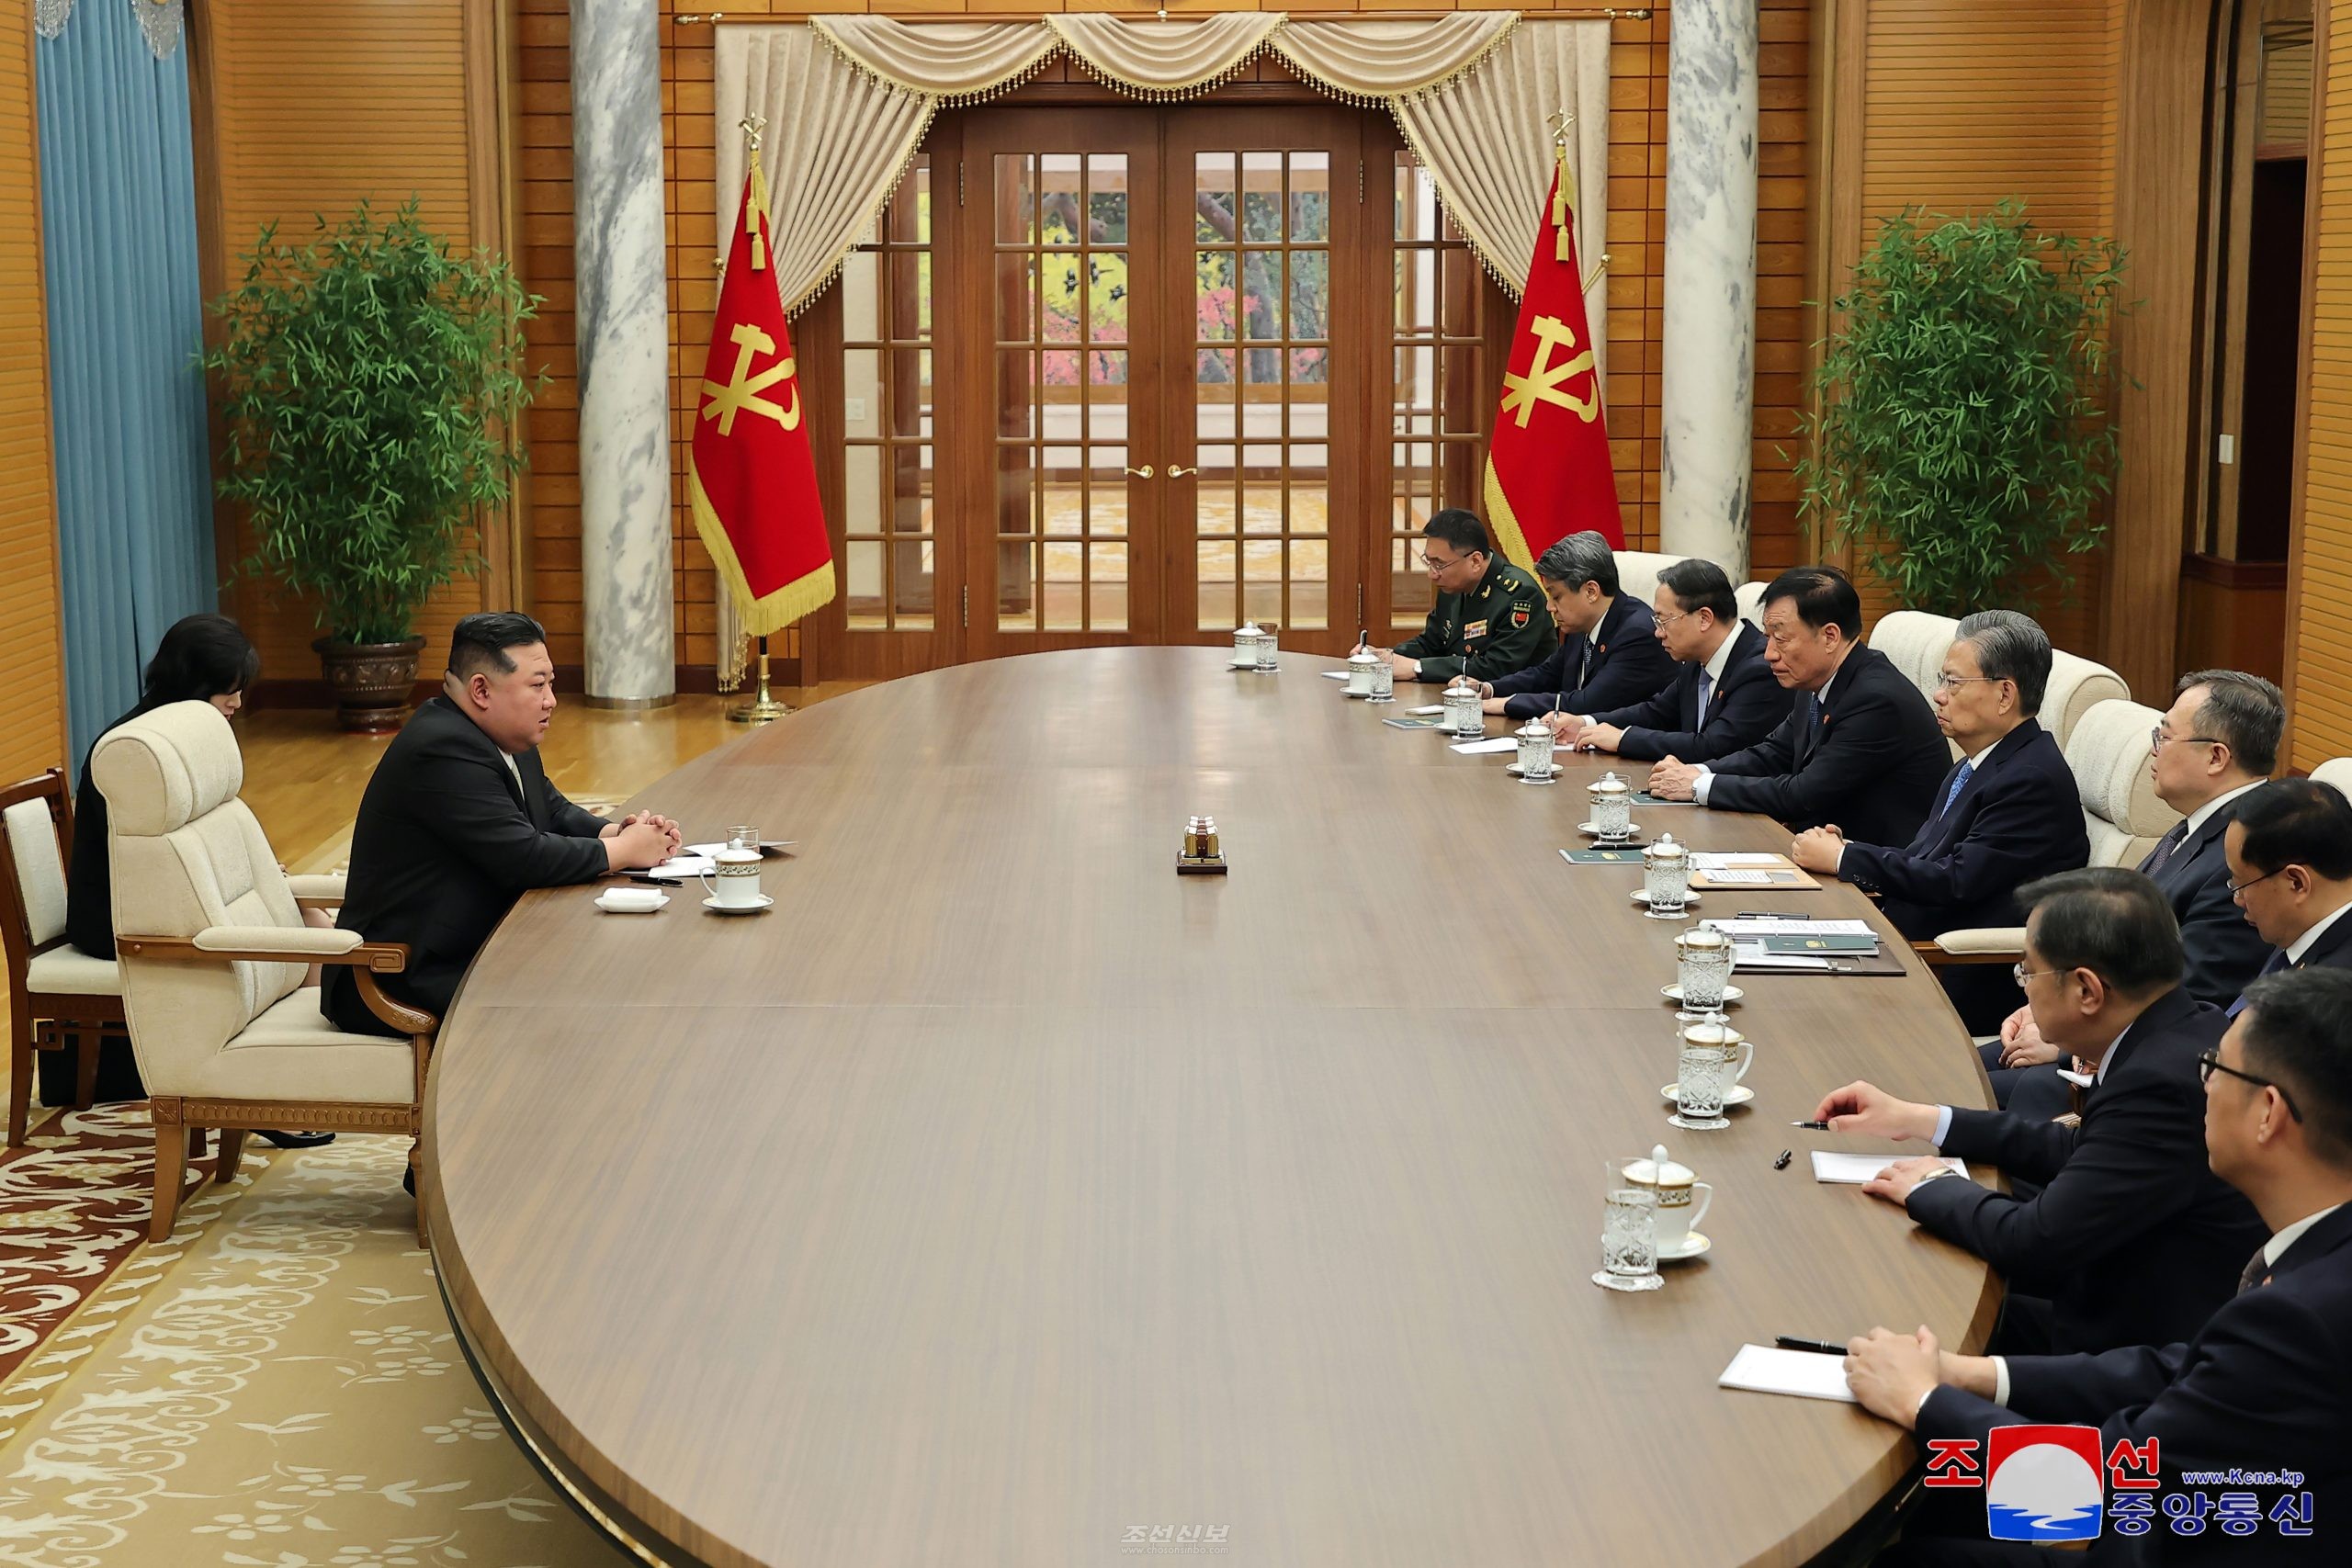 김정은원수님께서 중화인민공화국 당 및 정부대표단을 접견